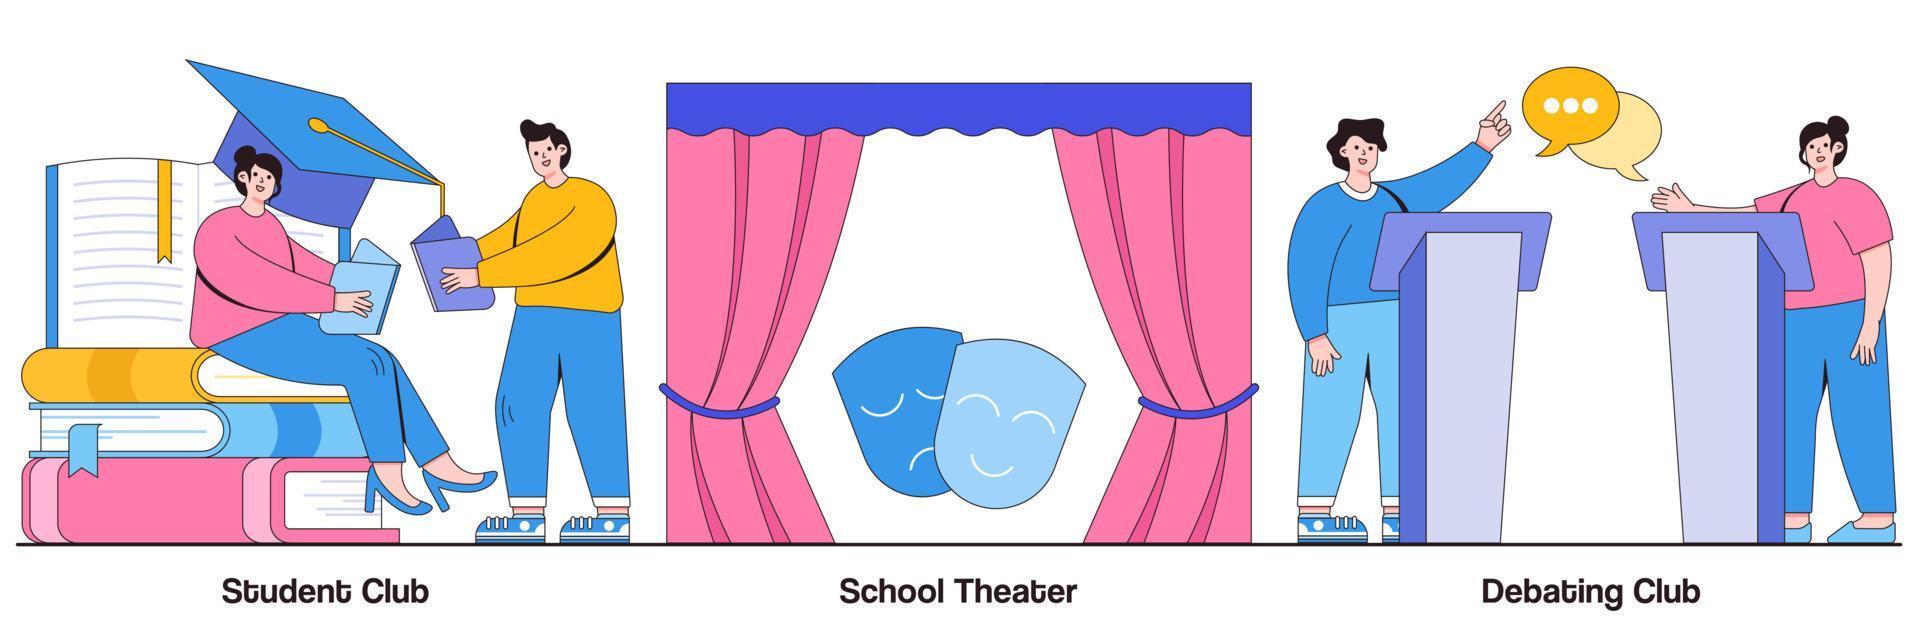 clube estudantil, teatro escolar e pacote ilustrado de competição de debates vetor